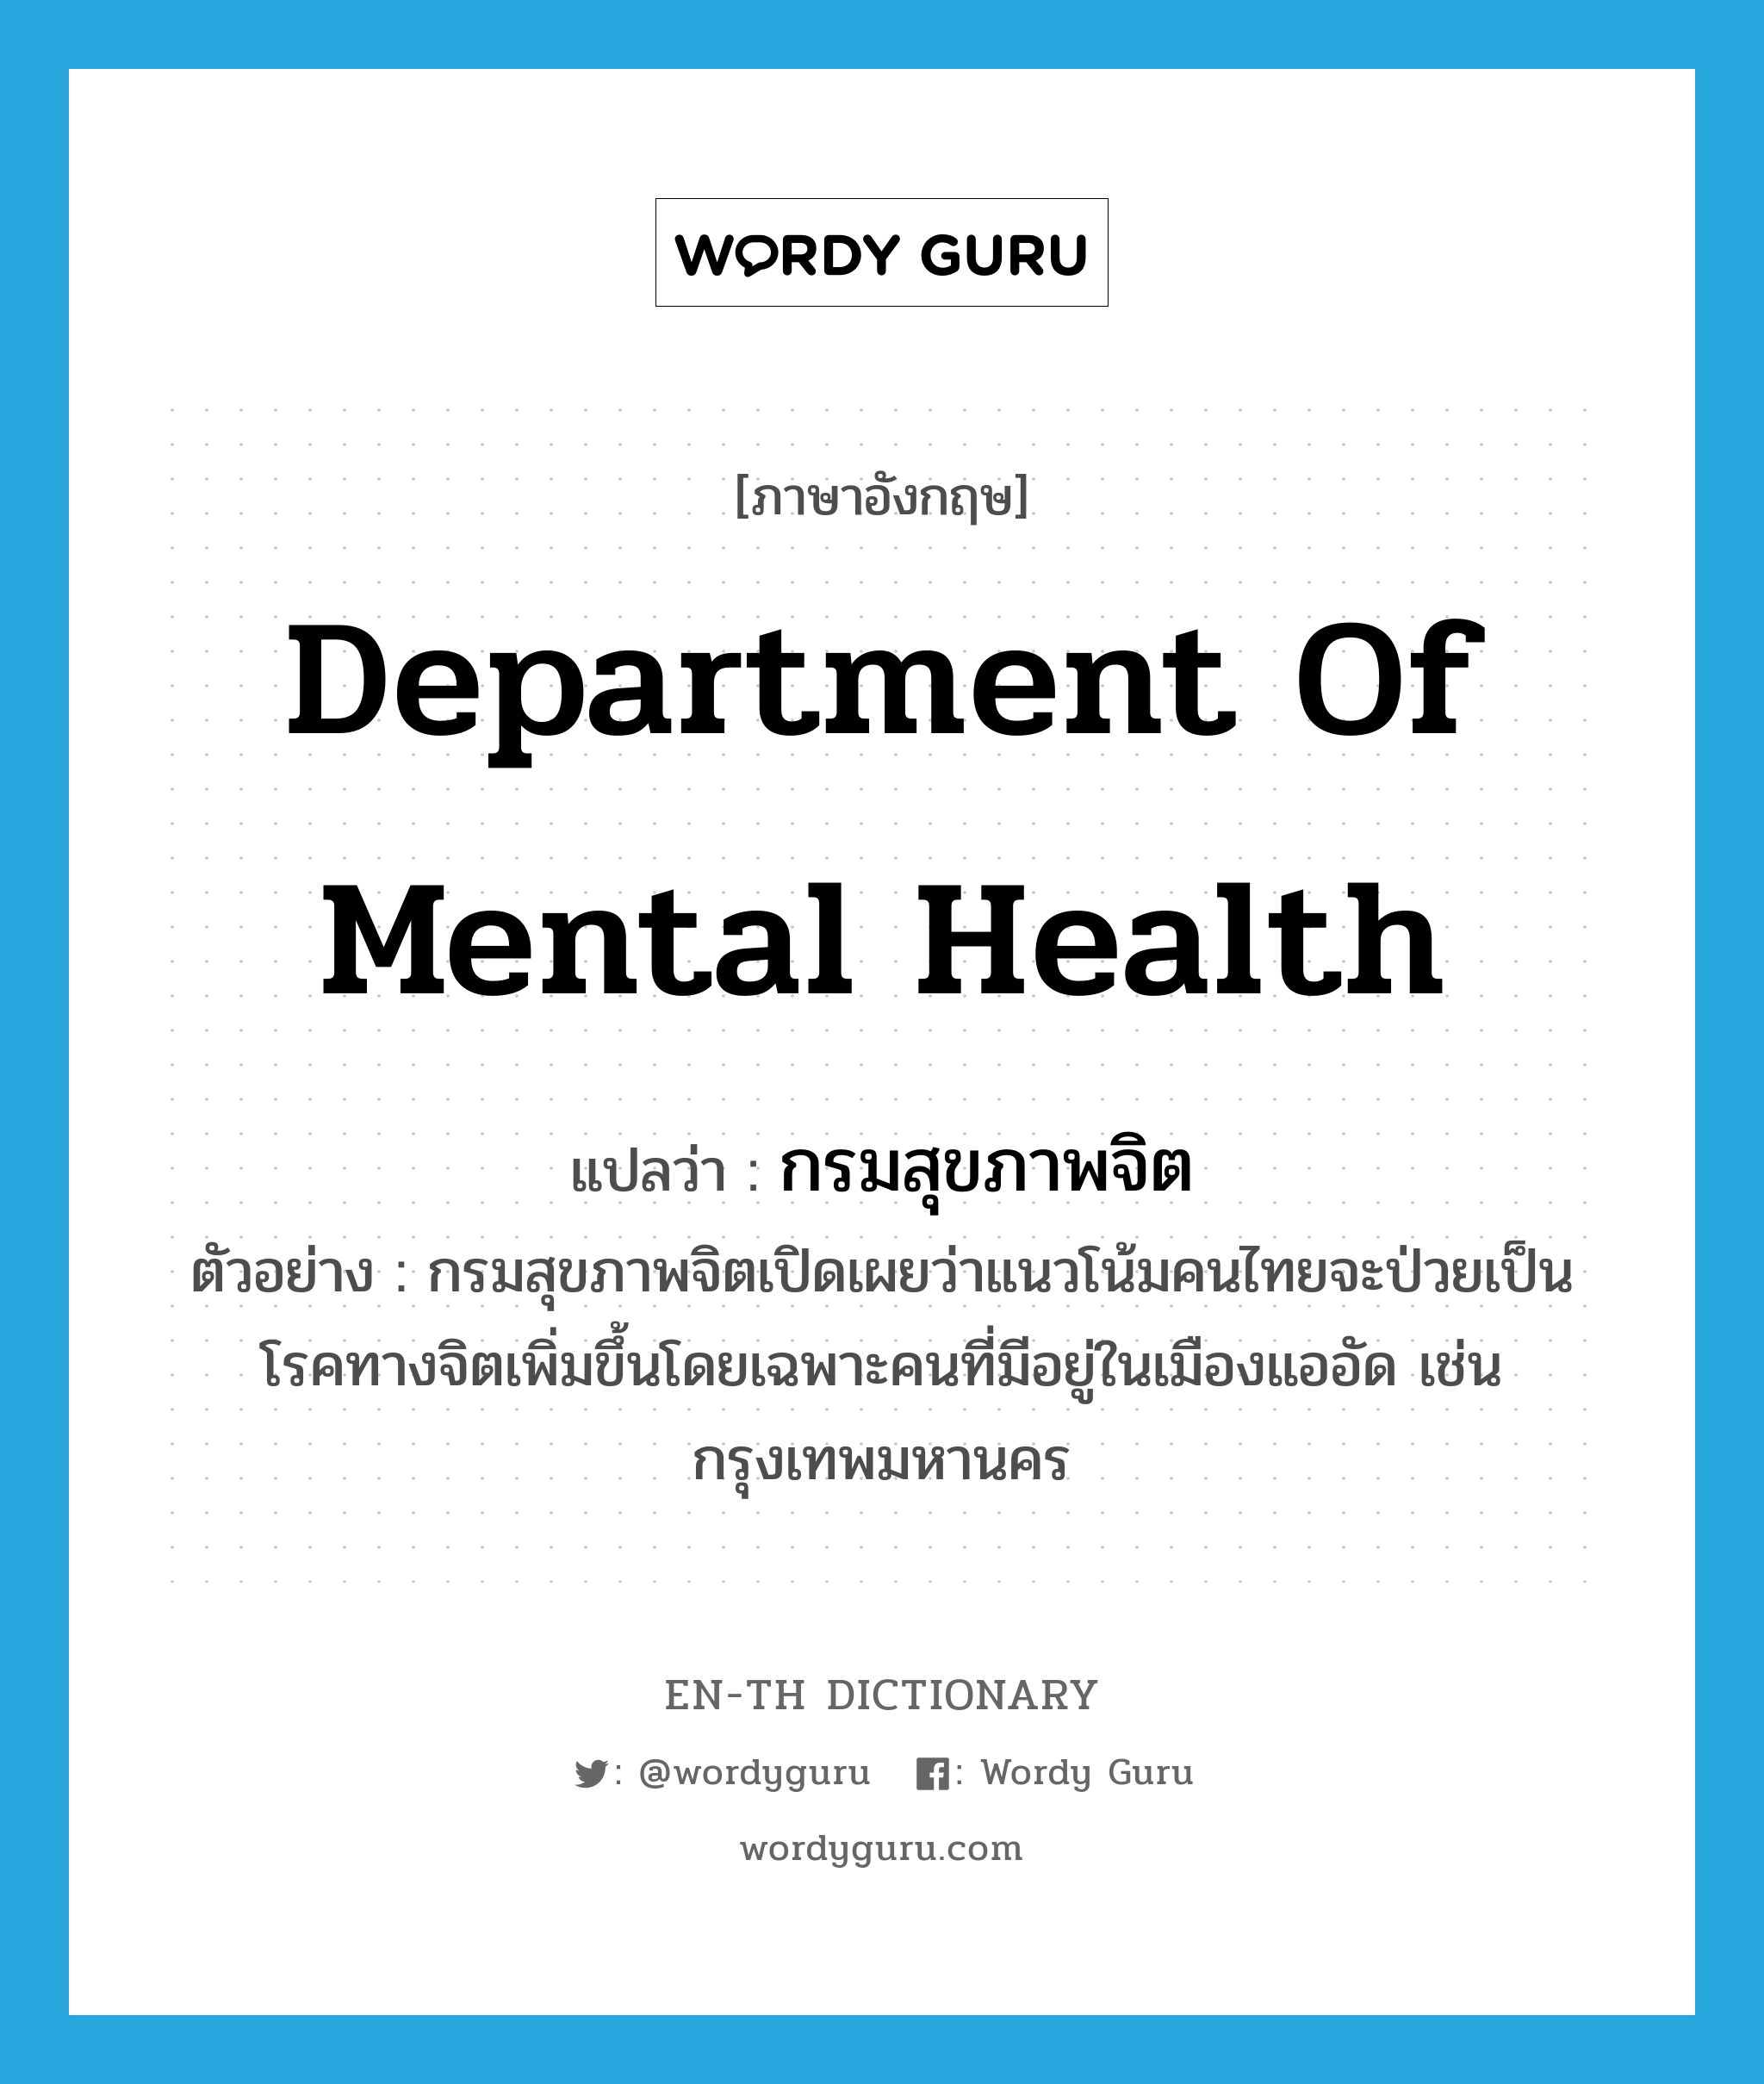 Department of Mental Health แปลว่า?, คำศัพท์ภาษาอังกฤษ Department of Mental Health แปลว่า กรมสุขภาพจิต ประเภท N ตัวอย่าง กรมสุขภาพจิตเปิดเผยว่าแนวโน้มคนไทยจะป่วยเป็นโรคทางจิตเพิ่มขึ้นโดยเฉพาะคนที่มีอยู่ในเมืองแออัด เช่น กรุงเทพมหานคร หมวด N